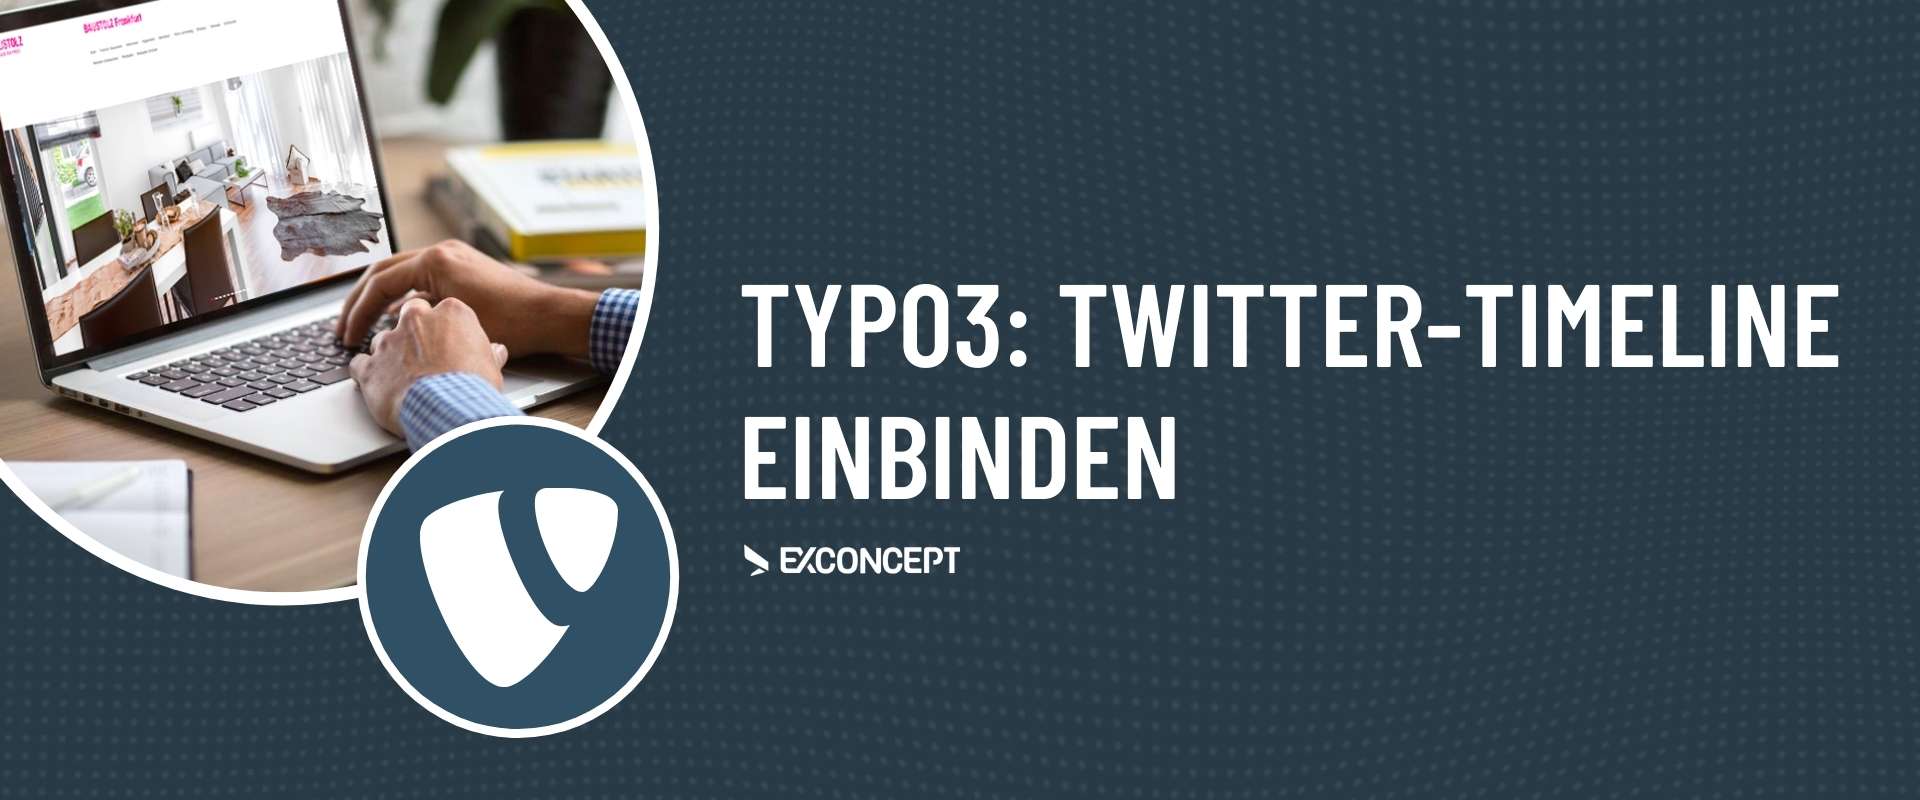 TYPO3-Support Twitter Timeline einbinden